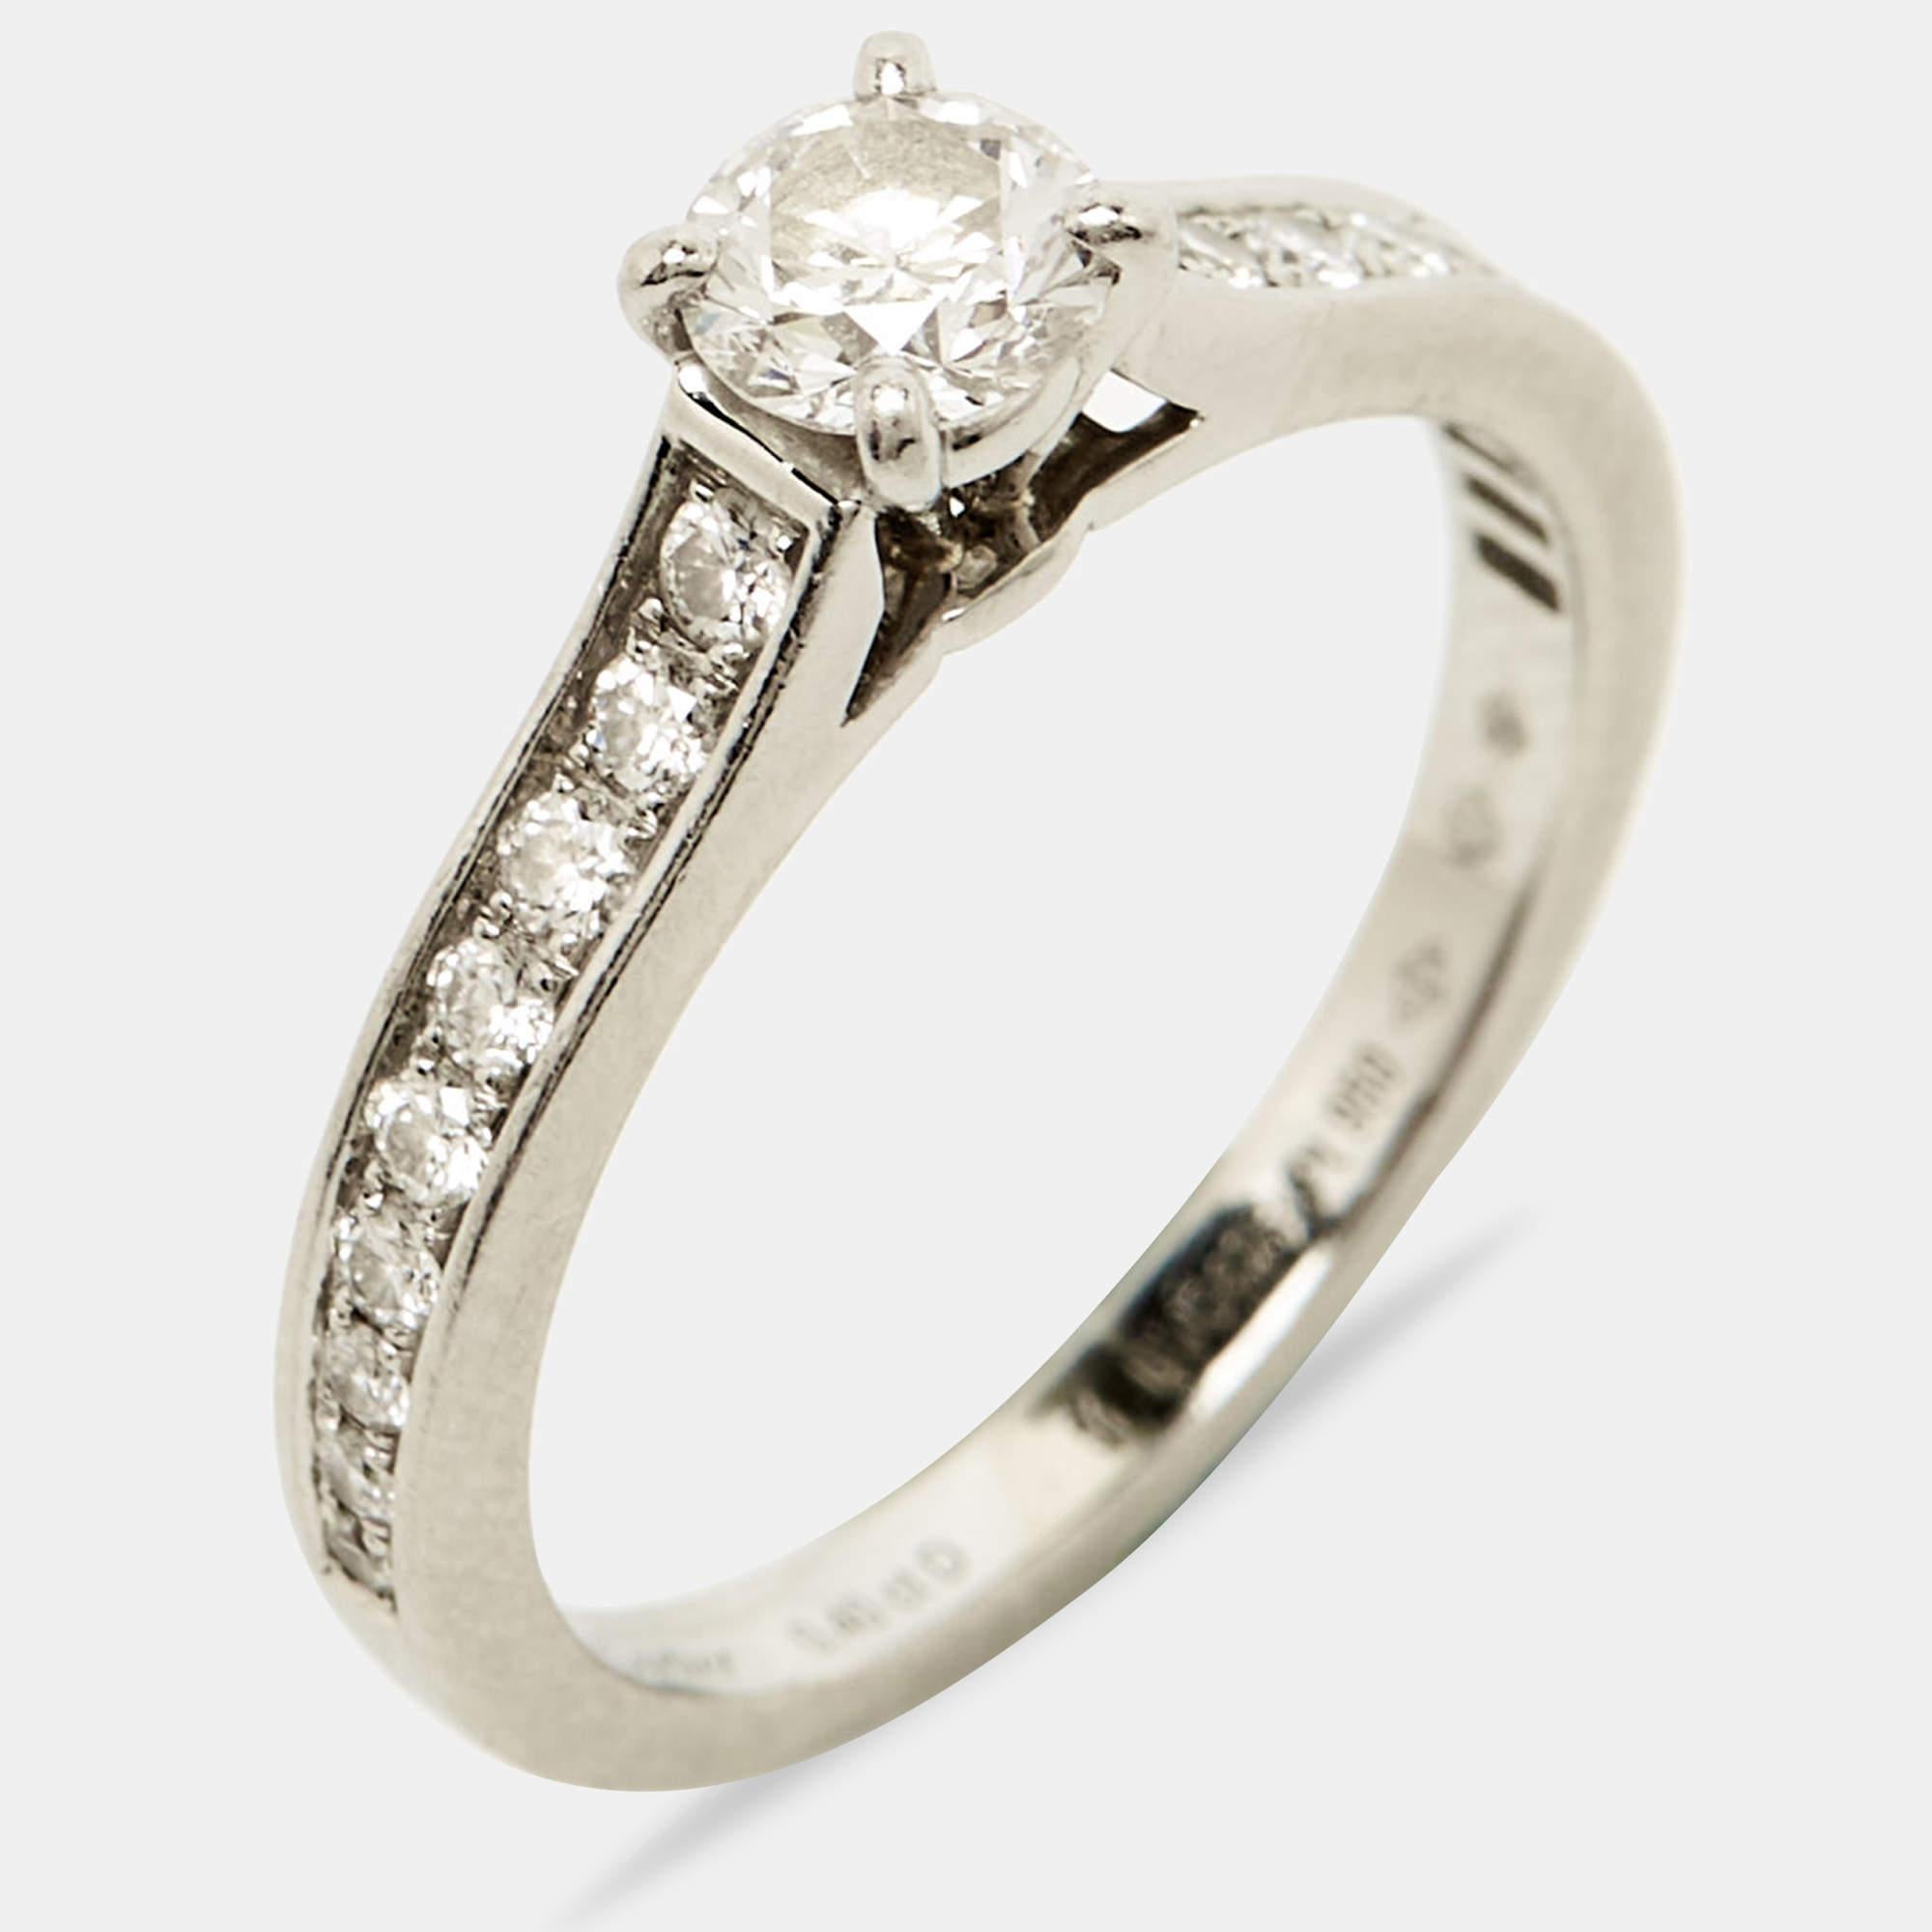 Uncut Cartier 1985 Solitaire Diamonds Platinum Engagement Ring Size 51